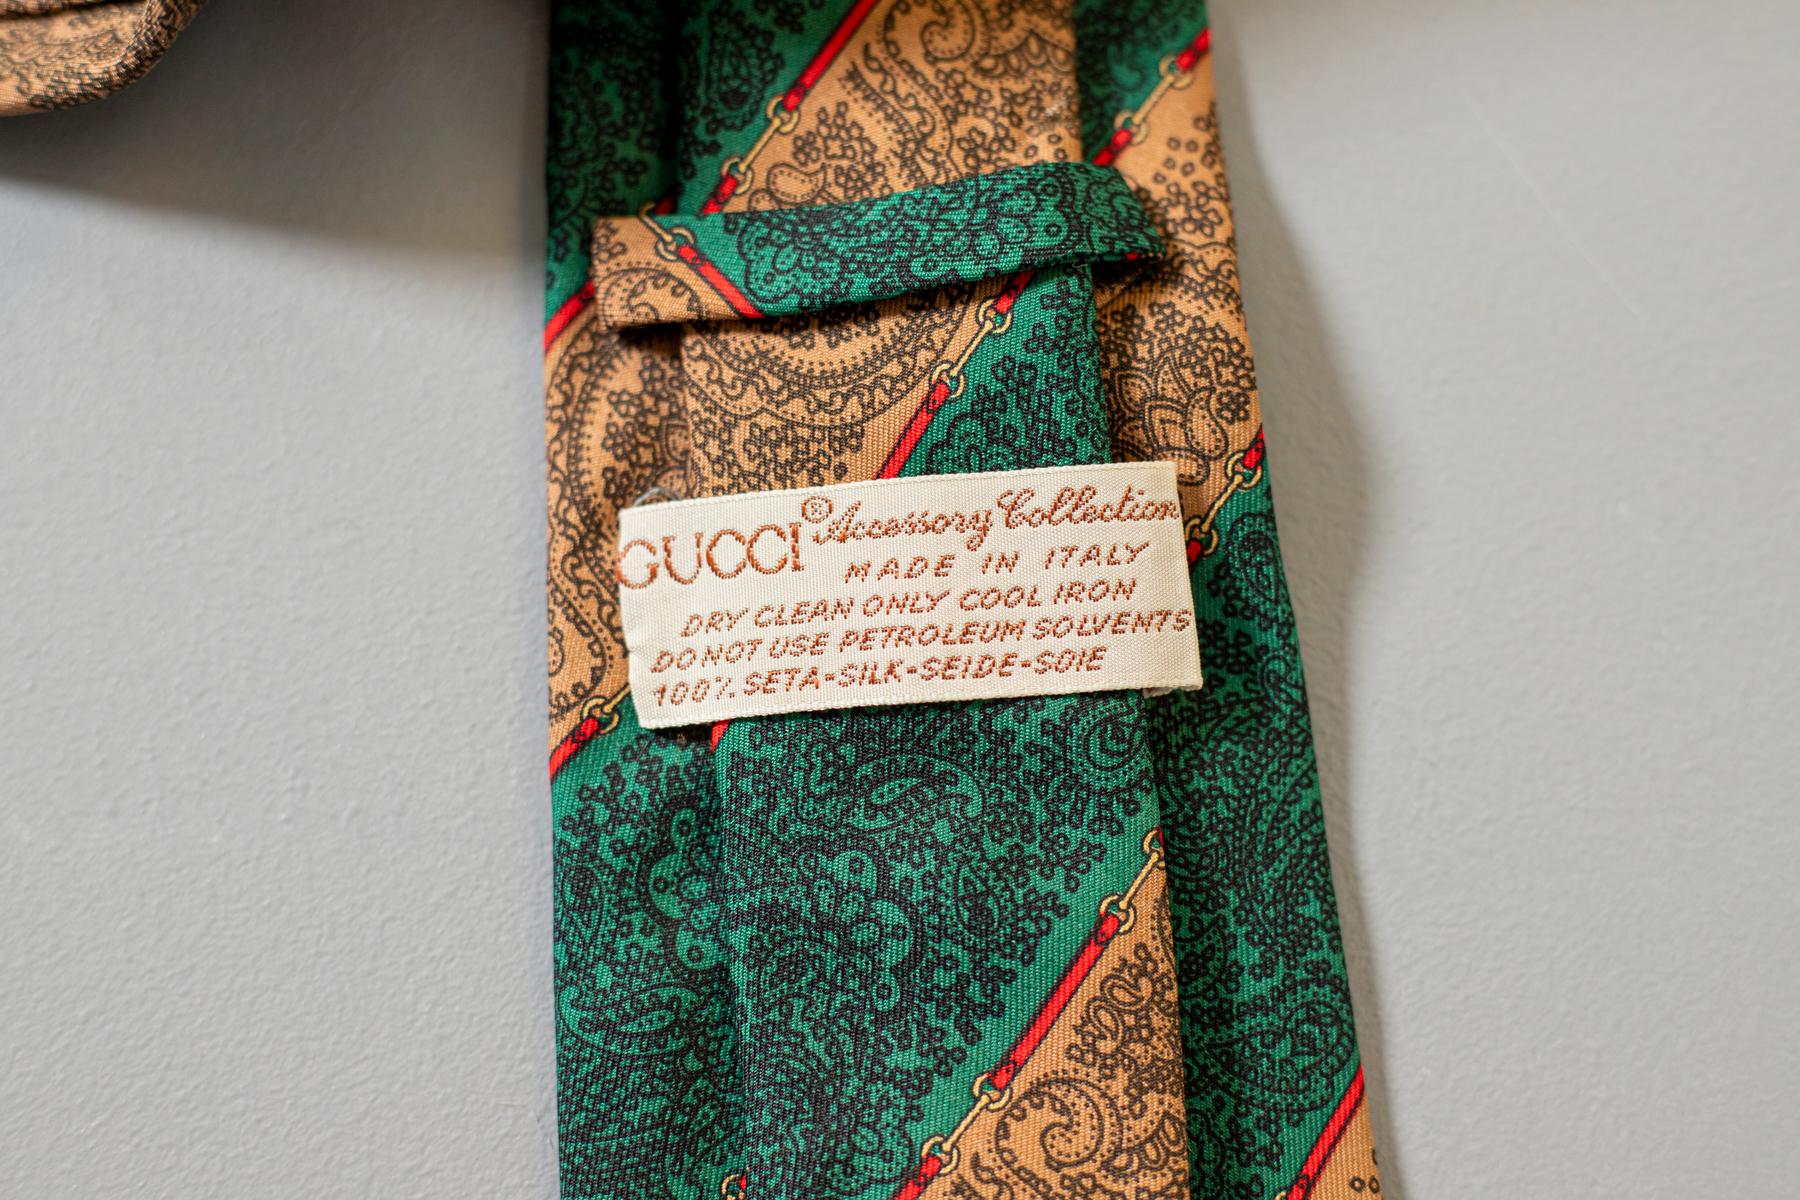 Un motif cachemire noir sur un fond rayé vert et beige : cette cravate a tout pour plaire à Gucci. Fabriquée en soie, cette cravate est un éternel recommencement : c'est un choix parfait pour une occasion élégante mais informelle avec des collègues